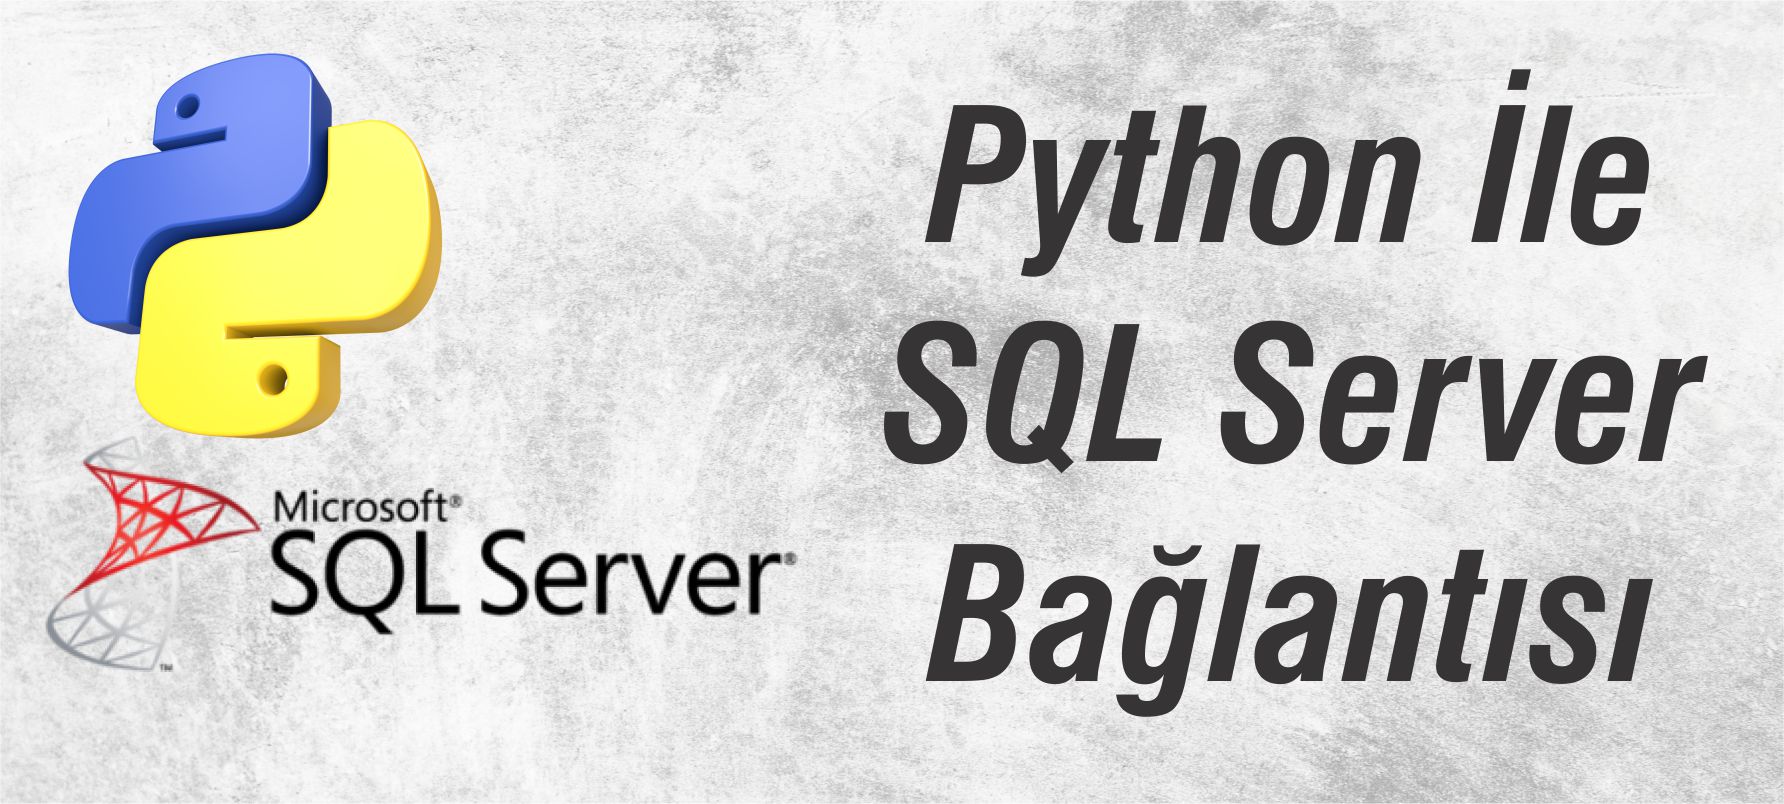 Python ile SQL Server Bağlantısı